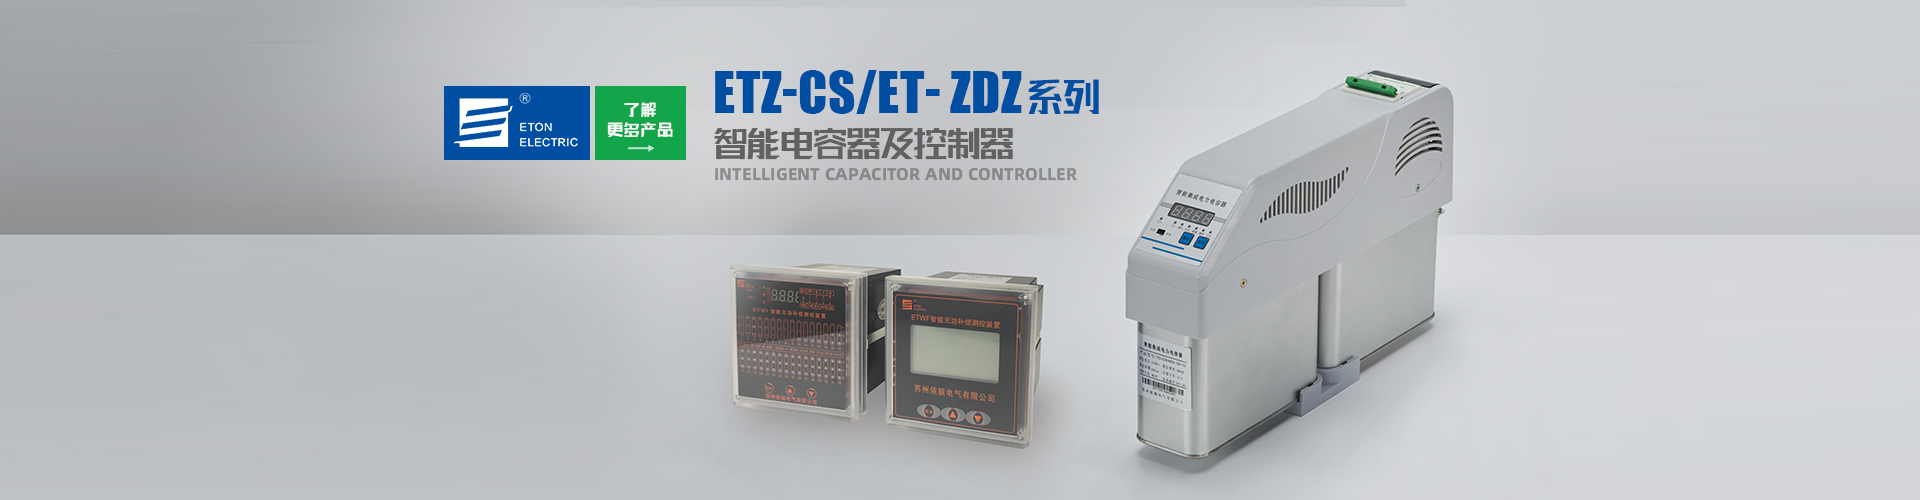 太阳集团tyc151(中国)官方网站_产品8912